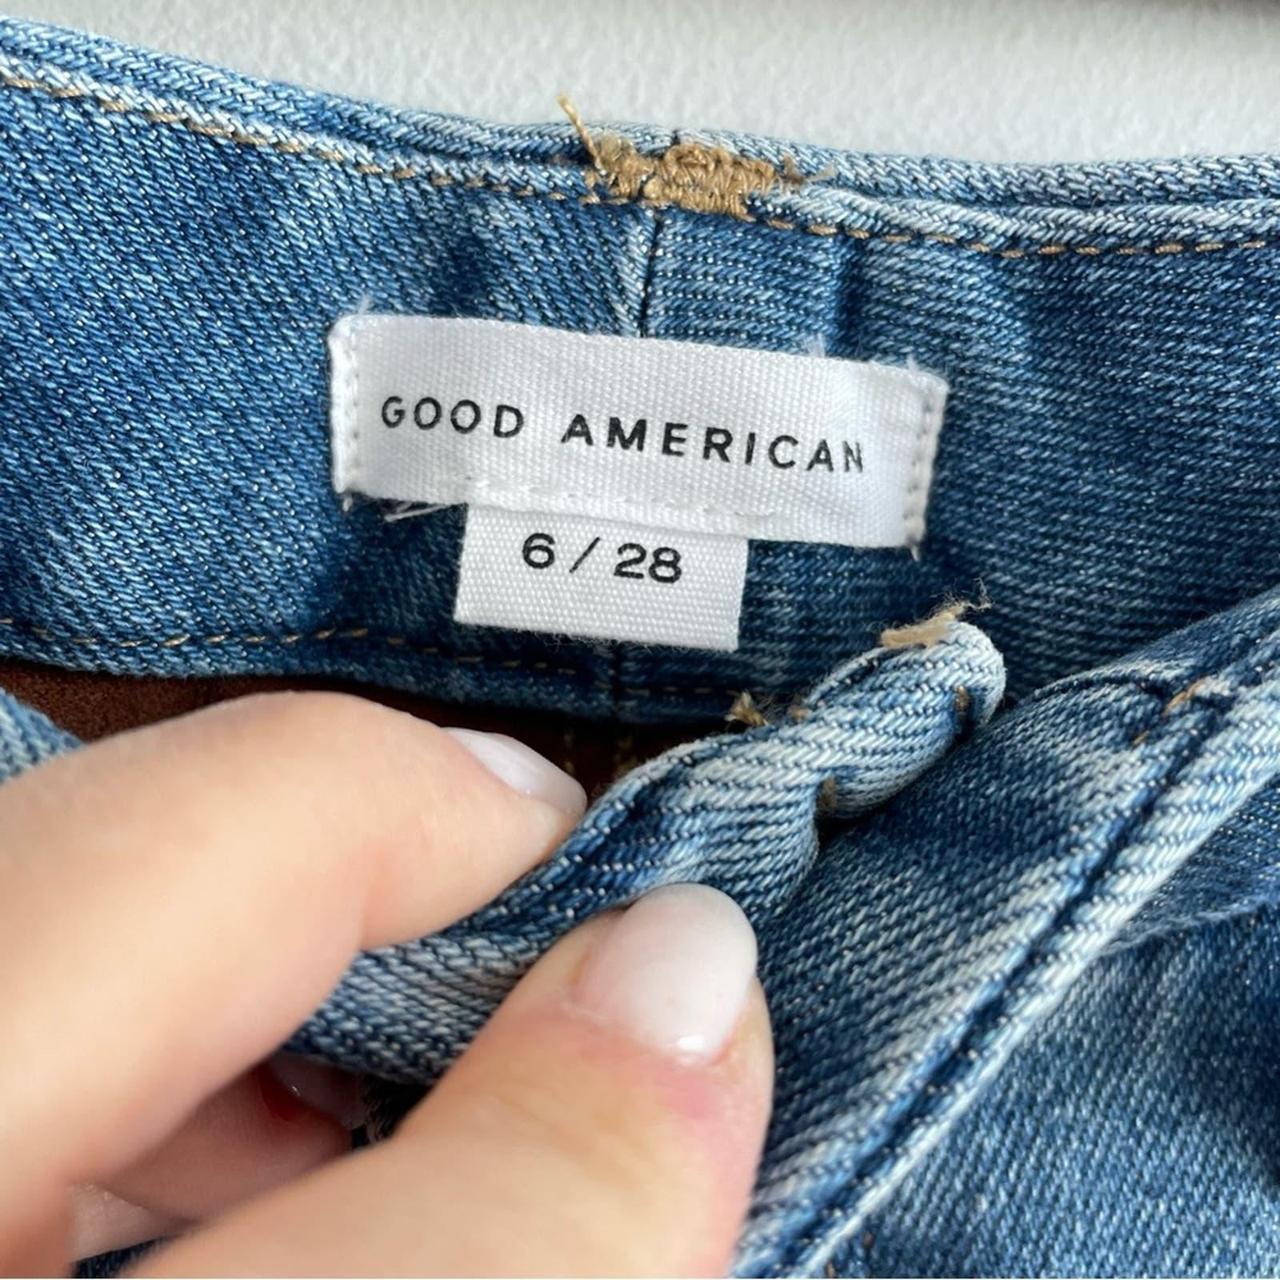 GOOD AMERICAN Women's Good Legs Denim Jeans in Blue 004 Size 6/28